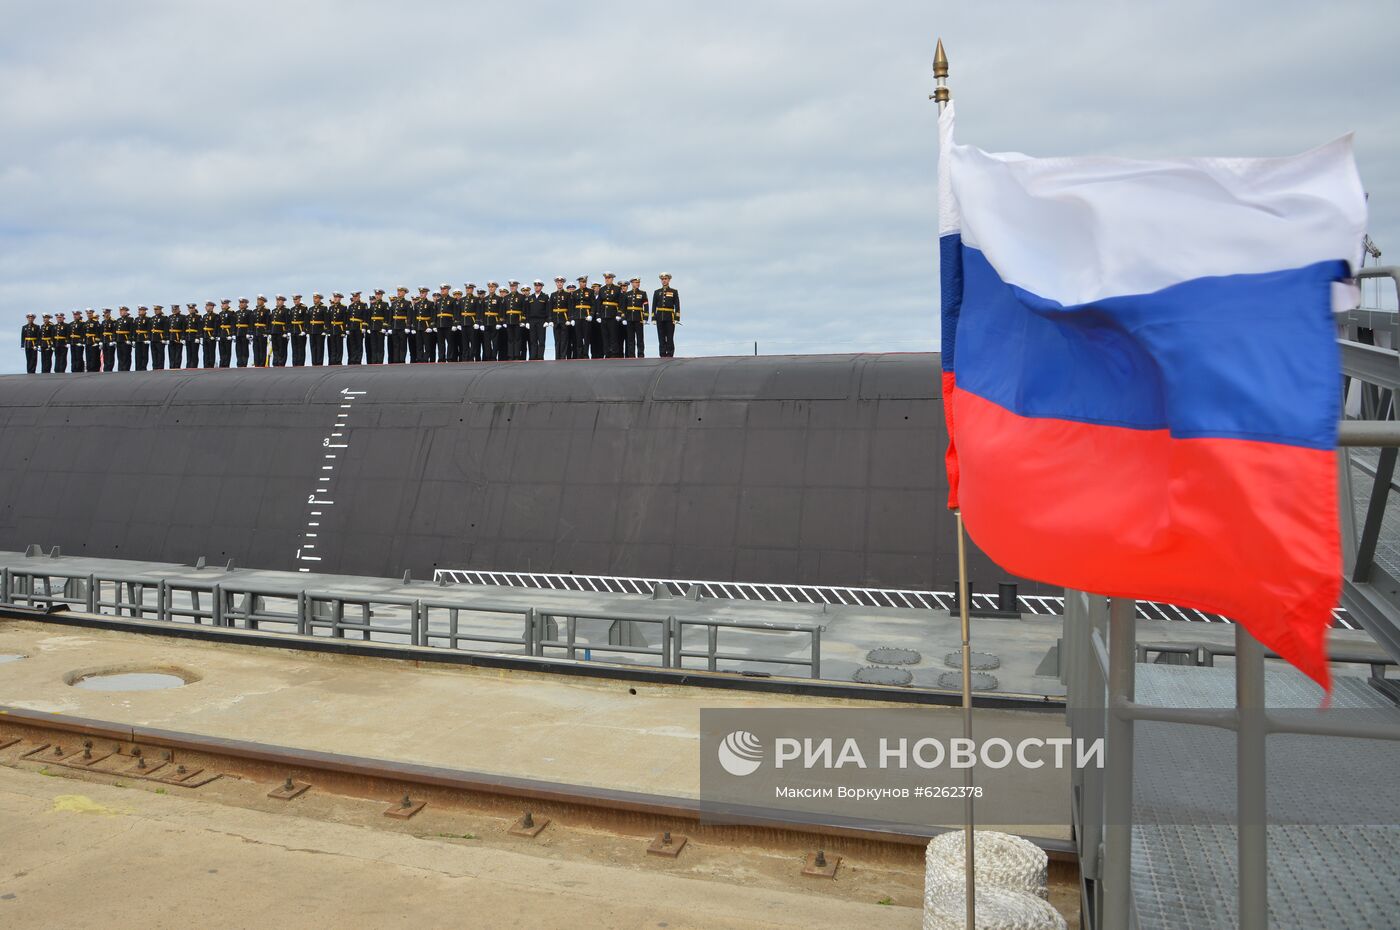 Поднятие Андреевского флага на атомной подводной лодке "Князь Владимир"